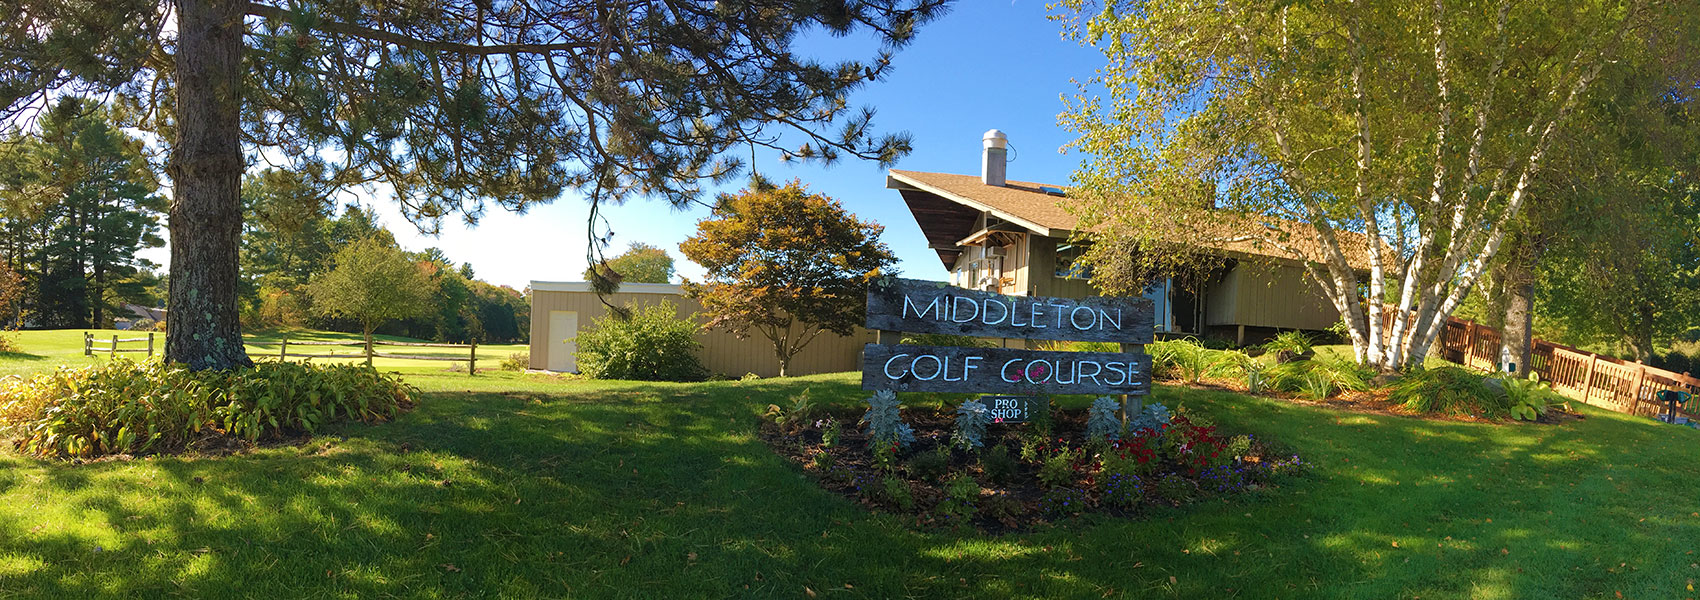 Middleton Golf Course, Middleton, MA